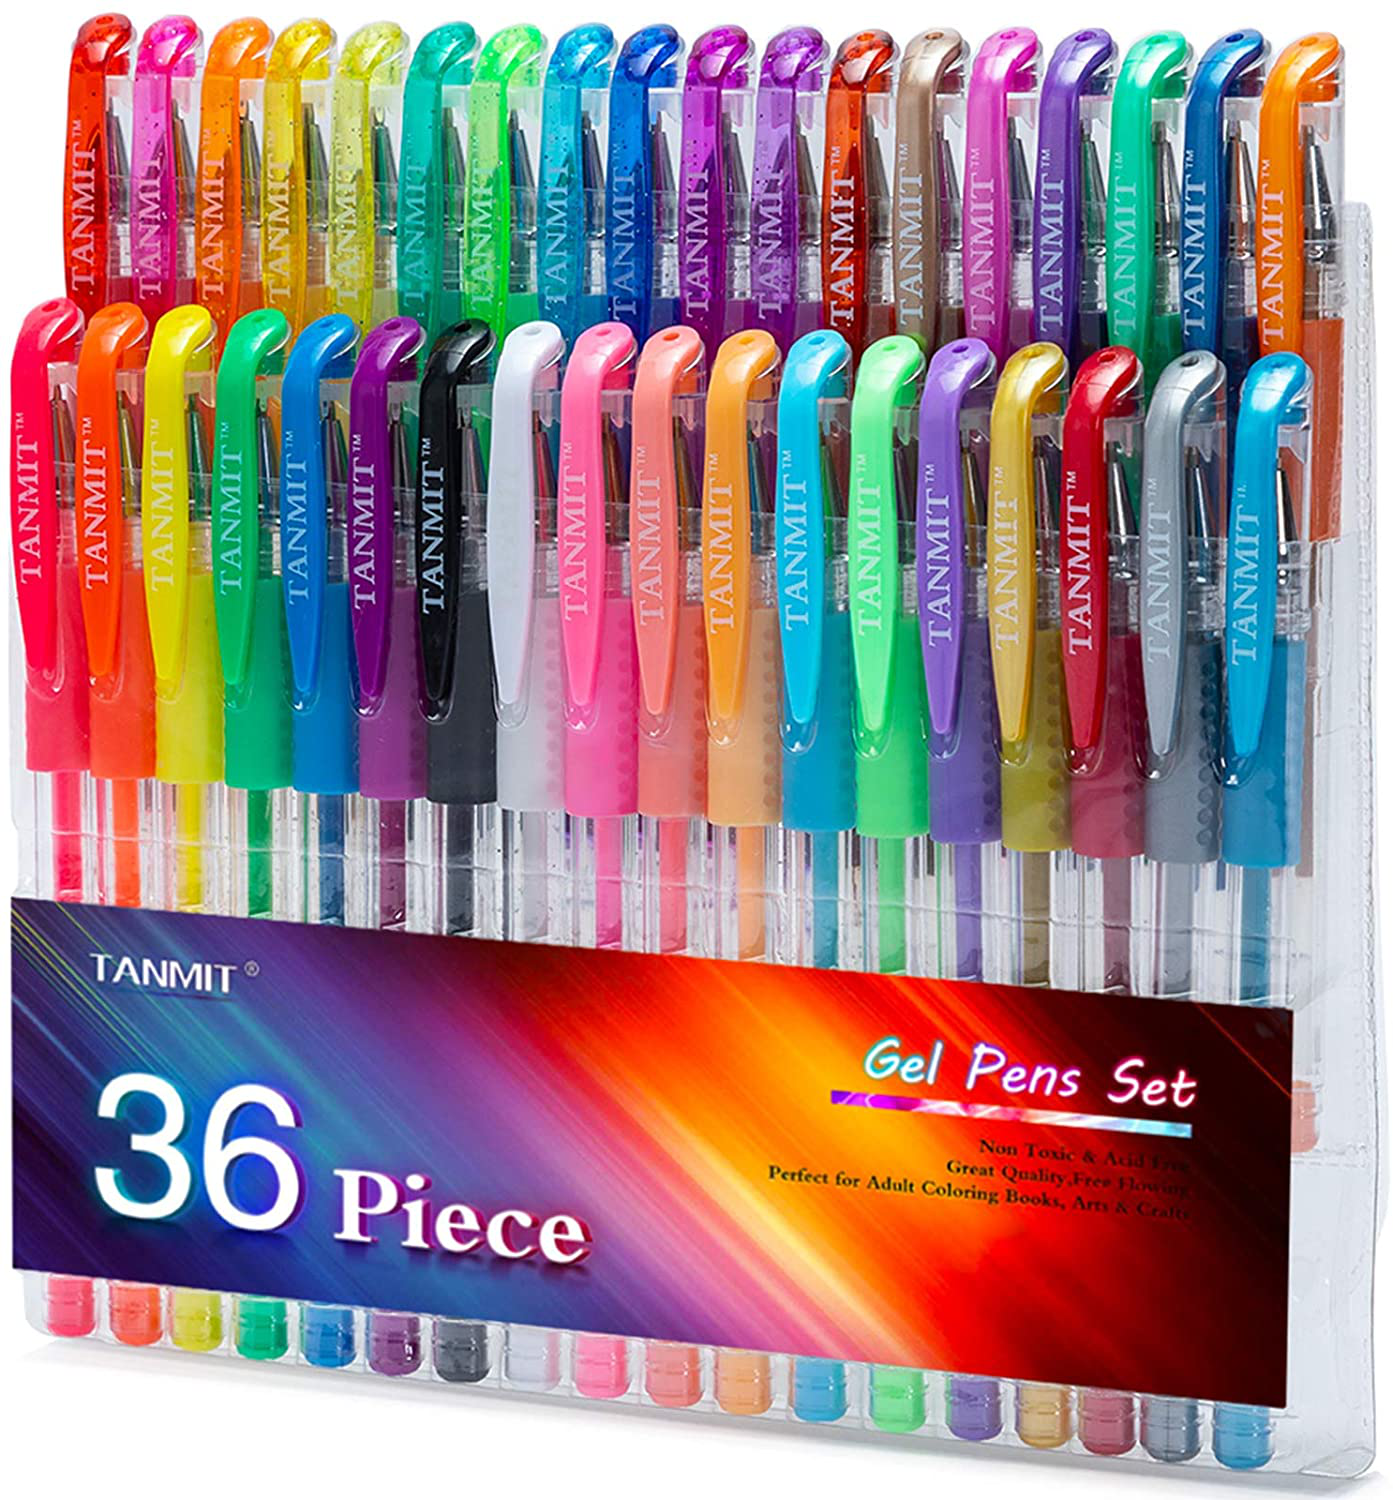 Tanmit Gel Pens Set Colored Pen Fine Point Art Marker Pen 36 Unique Colors for Adult Coloring Books